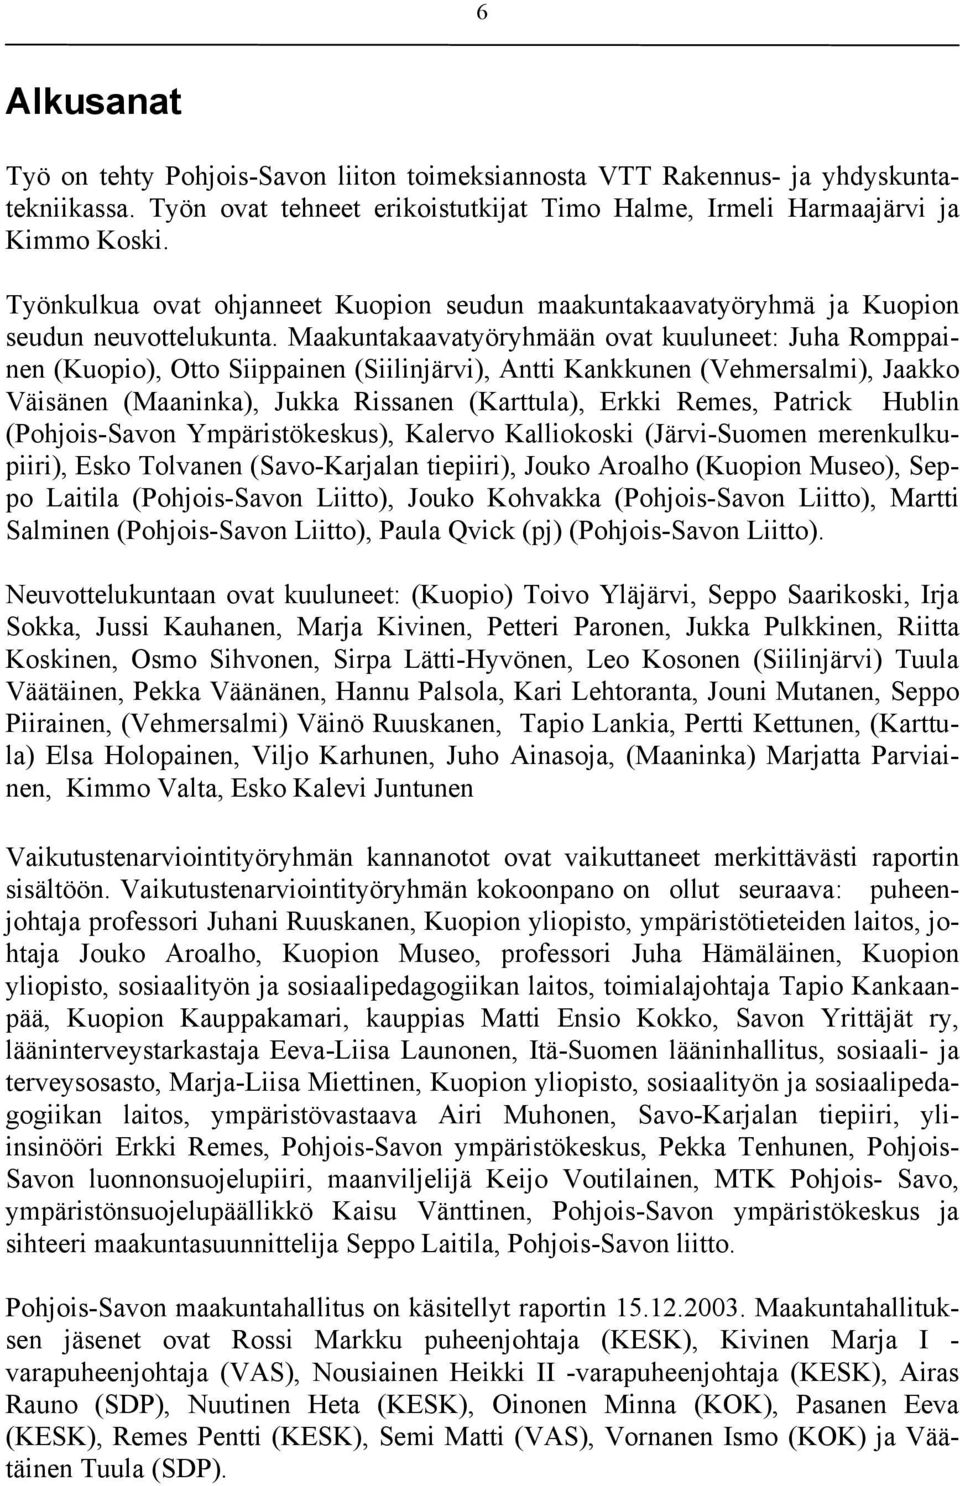 Maakuntakaavatyöryhmään ovat kuuluneet: Juha Romppainen (Kuopio, Otto Siippainen (Siilinjärvi, Antti Kankkunen (Vehmersalmi, Jaakko Väisänen (Maaninka, Jukka Rissanen (Karttula, Erkki Remes, Patrick